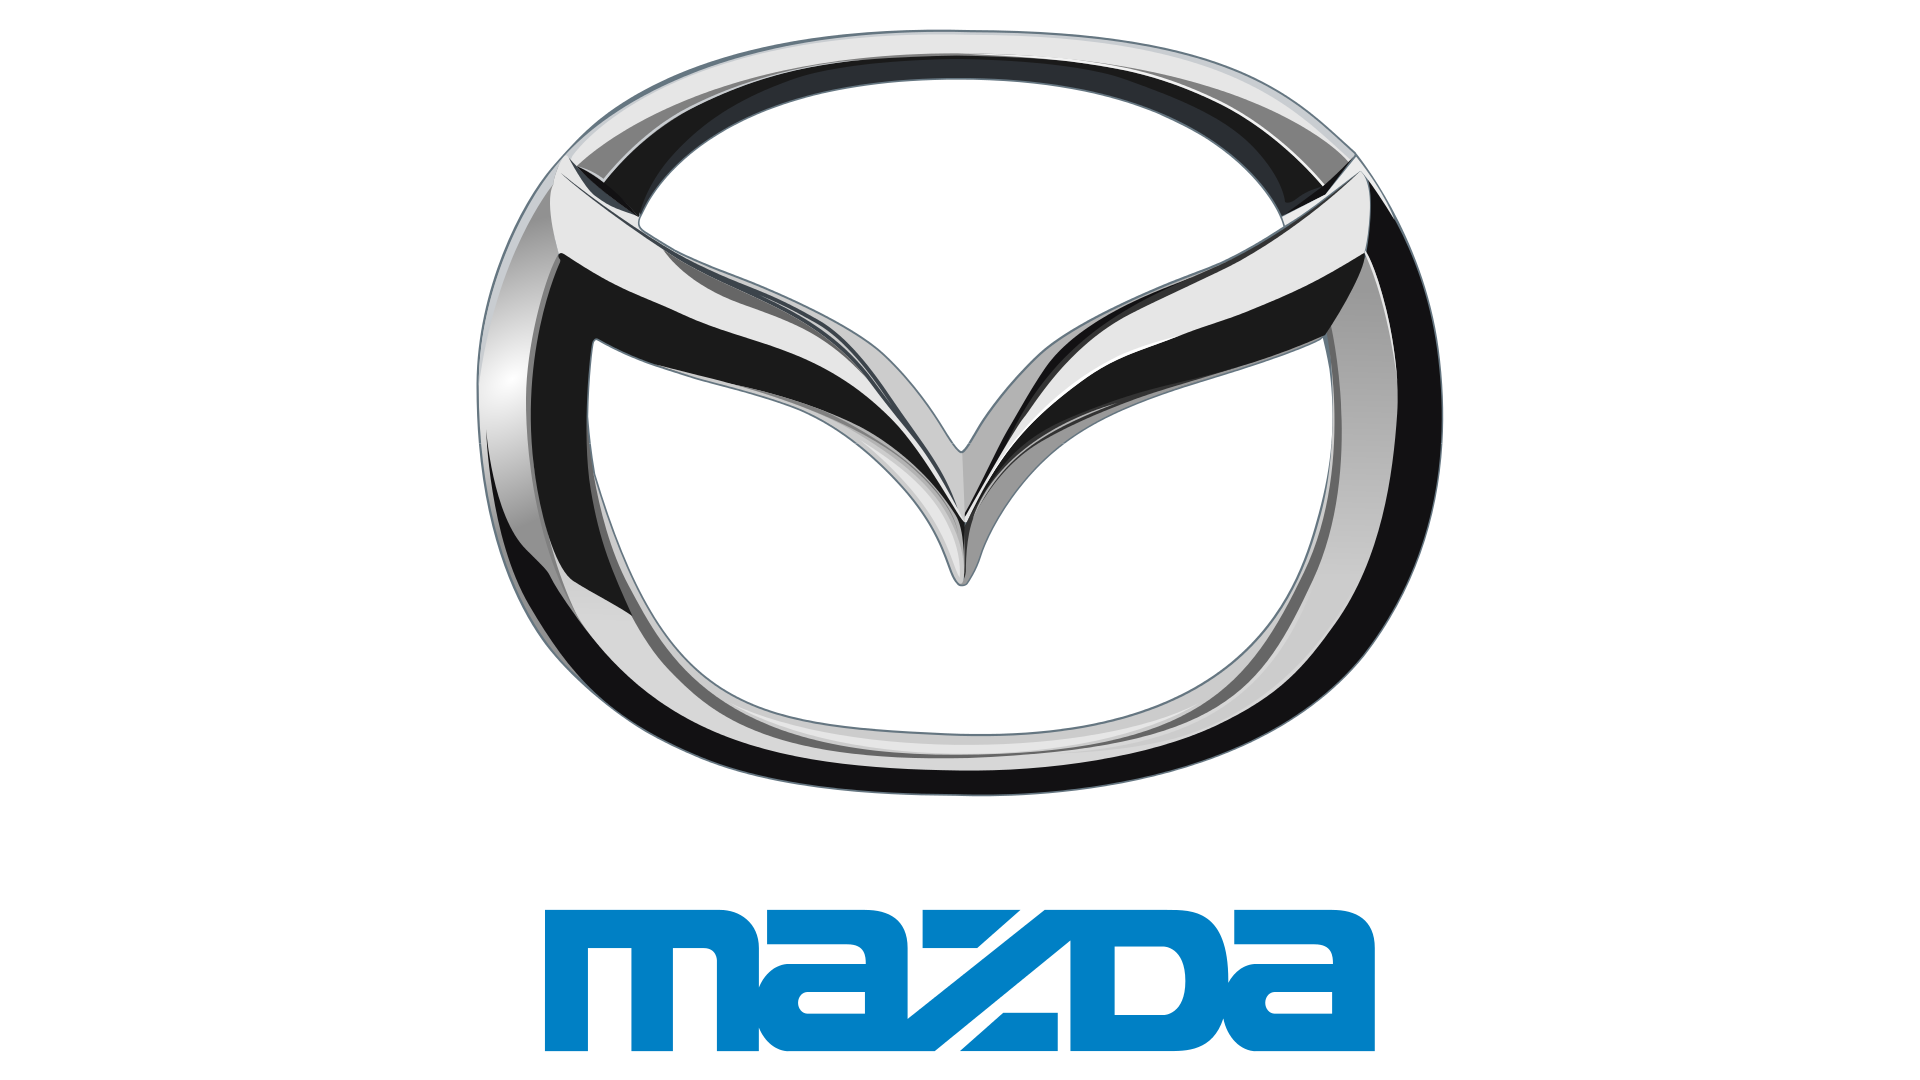 Mazda logo PNG